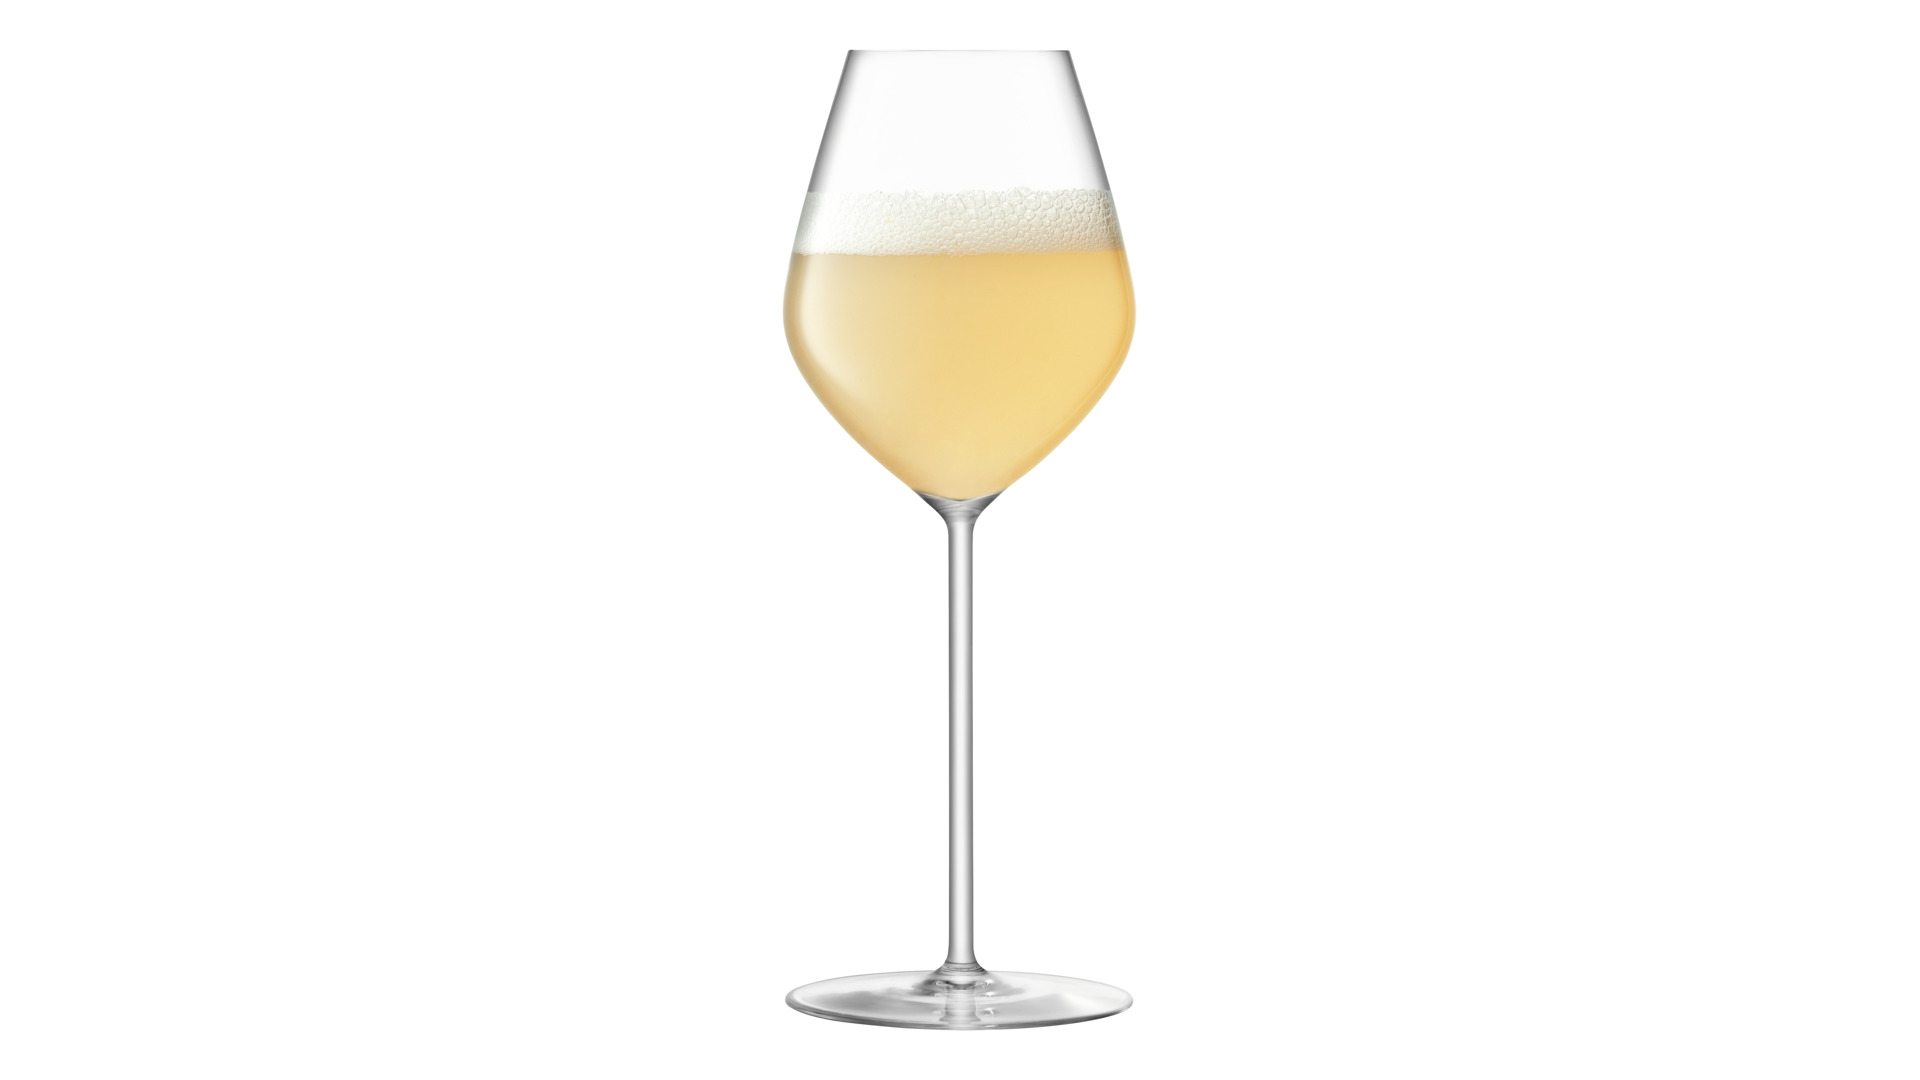 Набор бокалов для шампанского LSA International Borough 285 мл, 4 шт, стекло